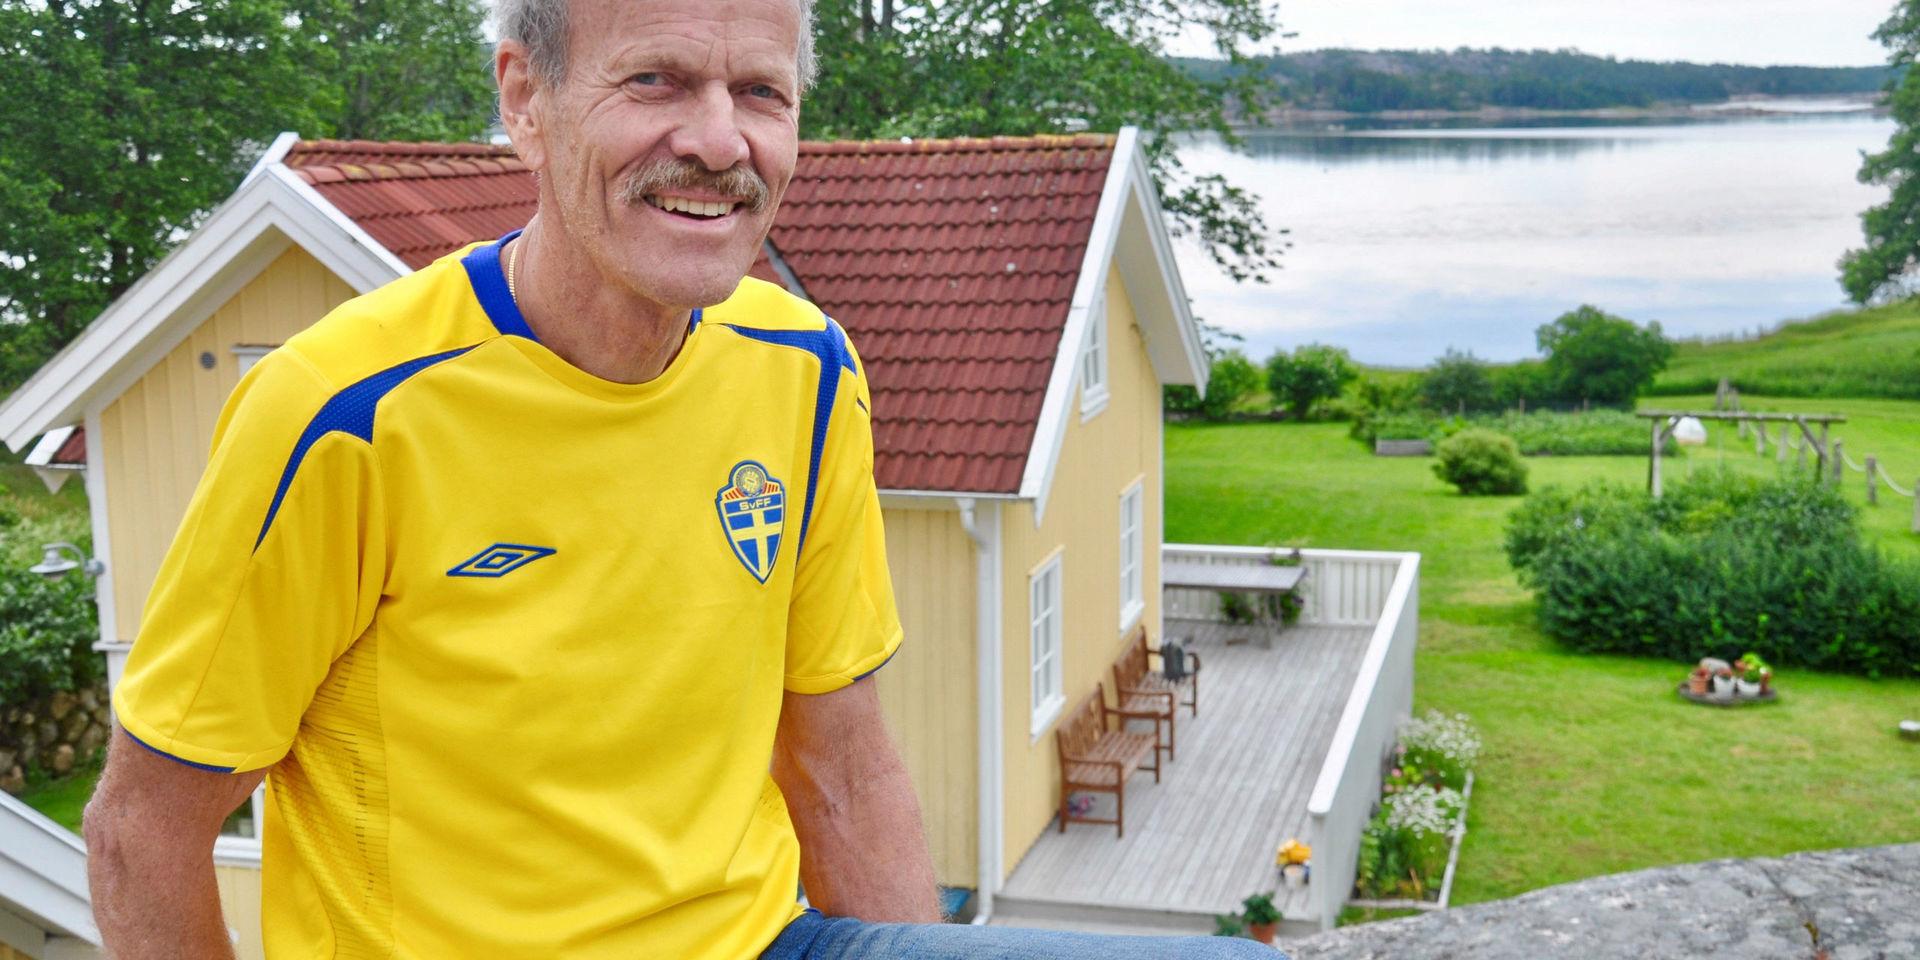 Vid fritidshuset på Resö har Kjell Grönlund vacker utsikt över fjorden. Han följer fotbolls-VM som pågår. &quot;Jag brukar ta på landslagströjan när jag ser på Sveriges matcher&quot;, säger Kjell, som är mycket fotbollsintresserad.